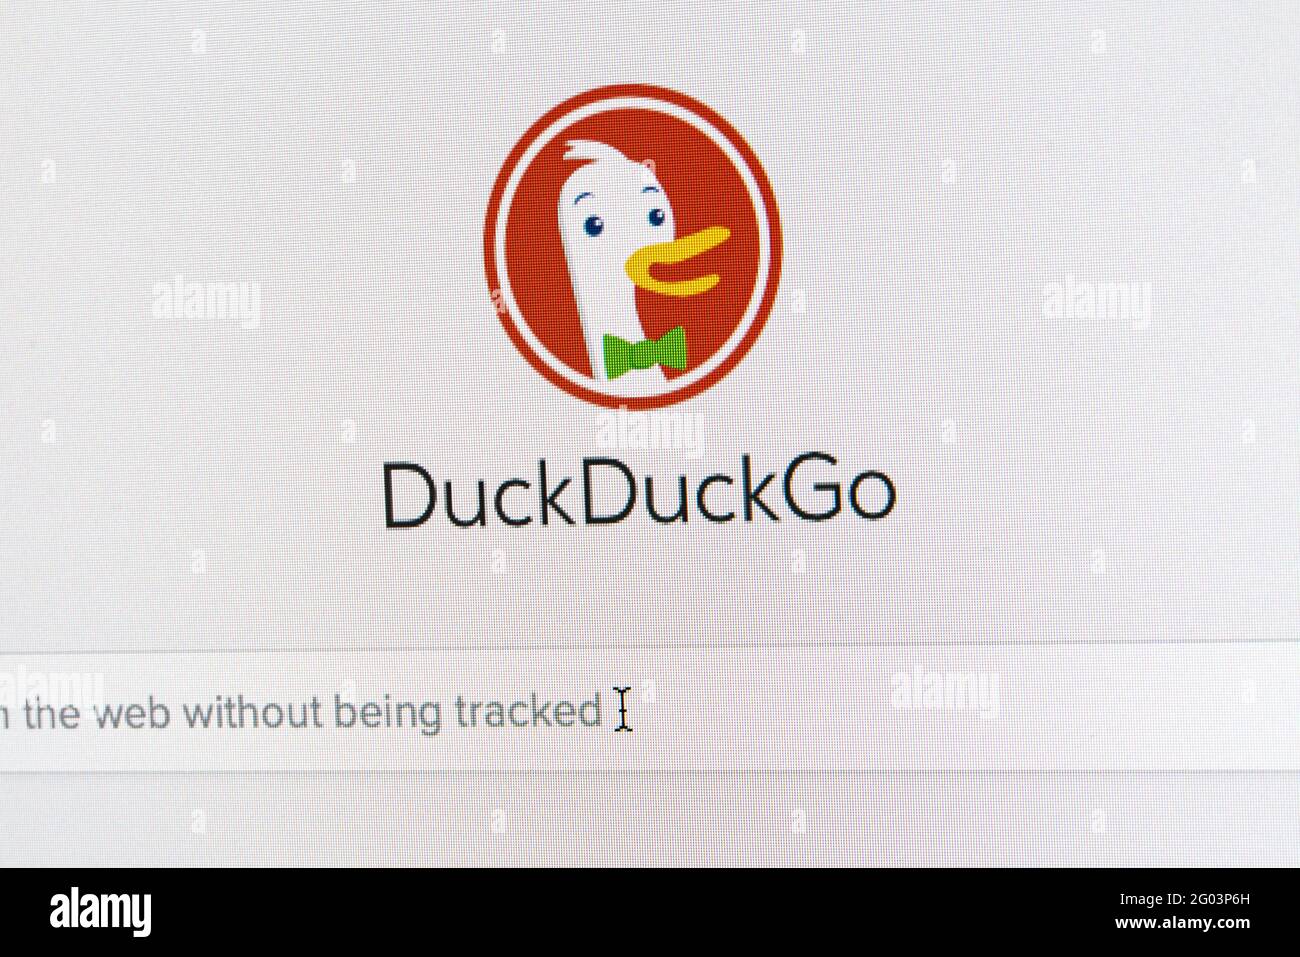 31-05-2021 Hambourg, Allemagne: Vue rapprochée de la page d'accueil du moteur de recherche DuckDuckGo dans la fenêtre du navigateur sur le moniteur de l'ordinateur Banque D'Images